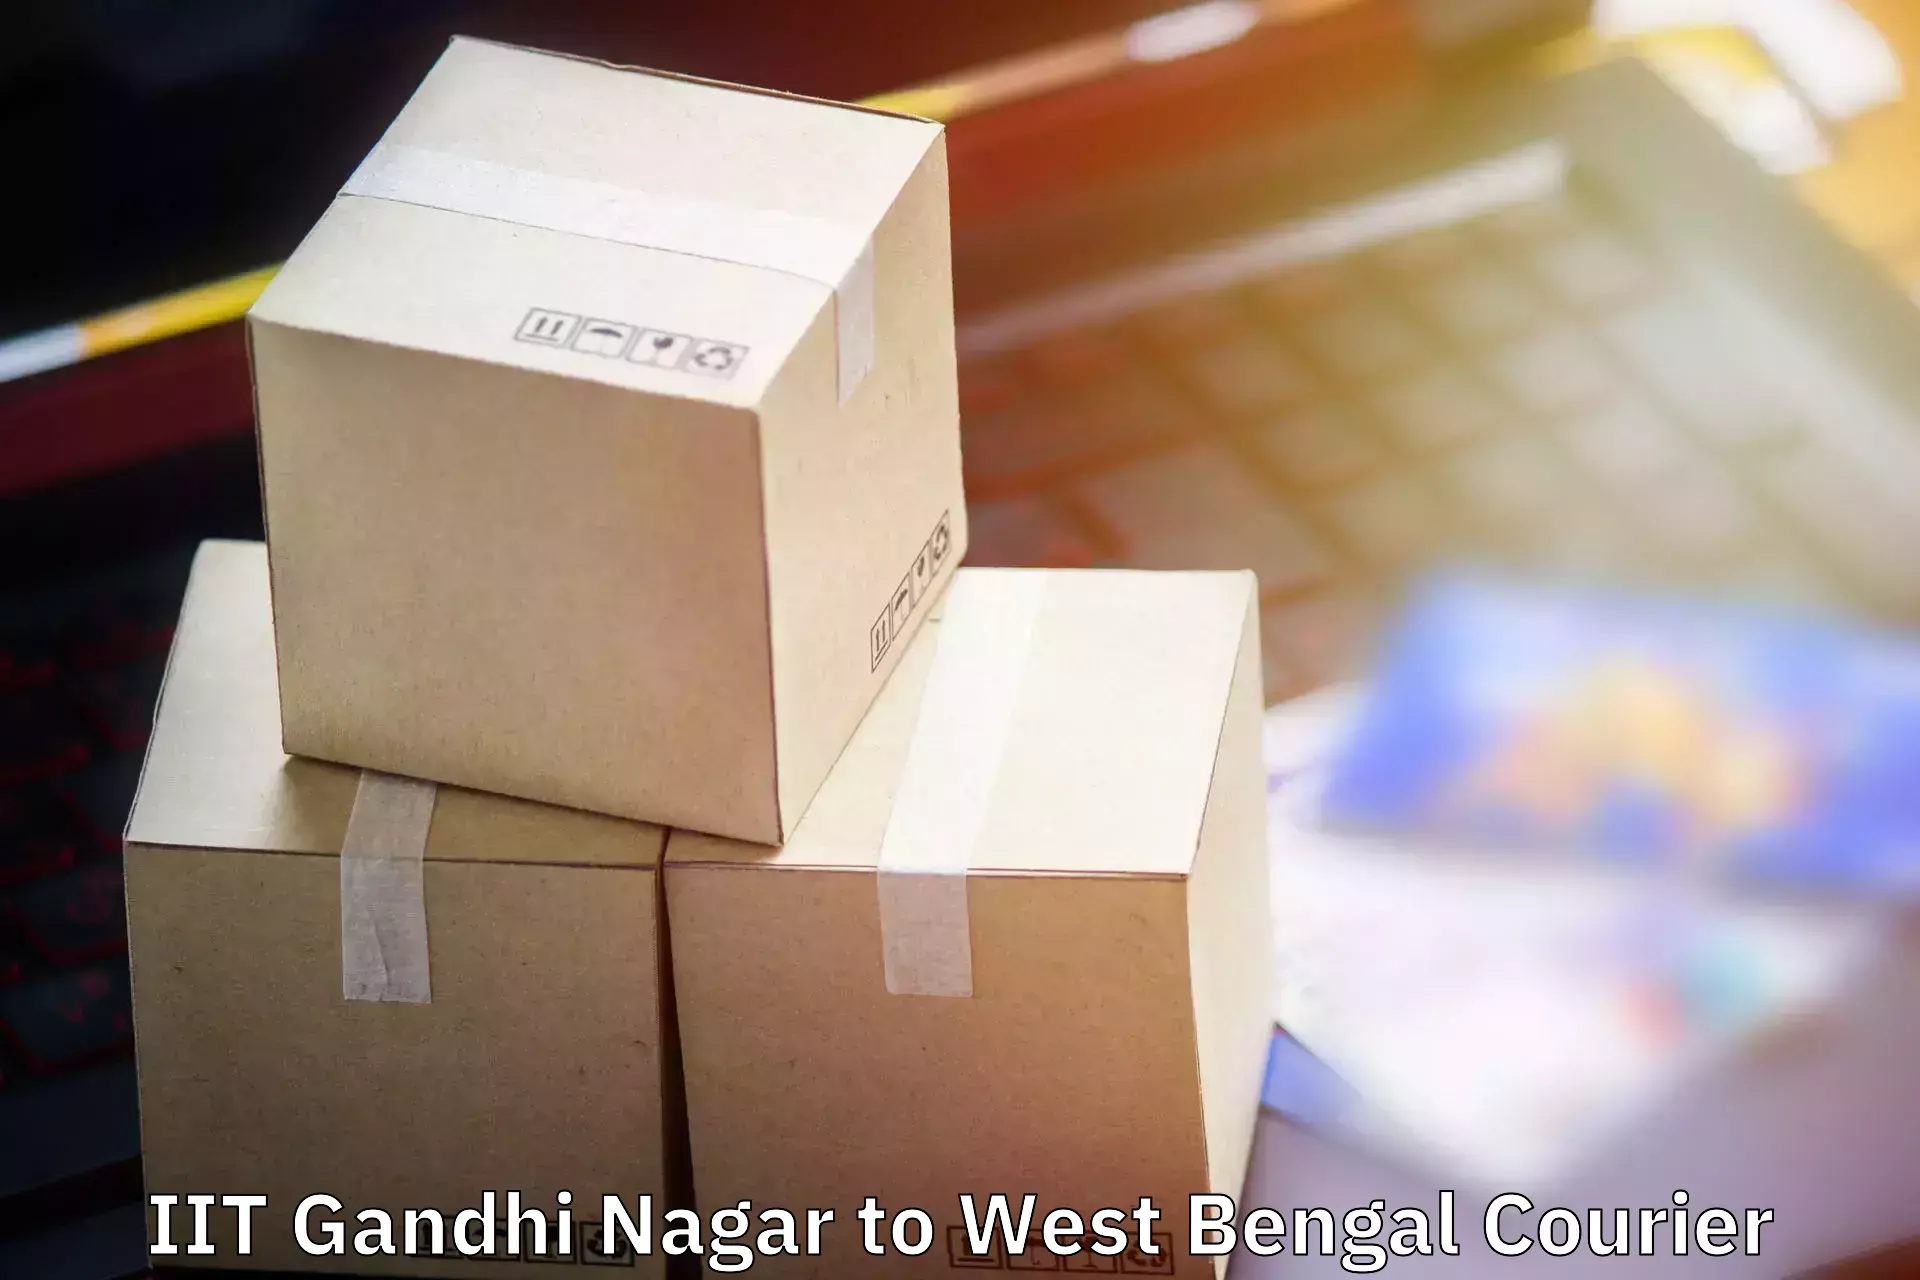 Luggage shipping service IIT Gandhi Nagar to Bhatpara